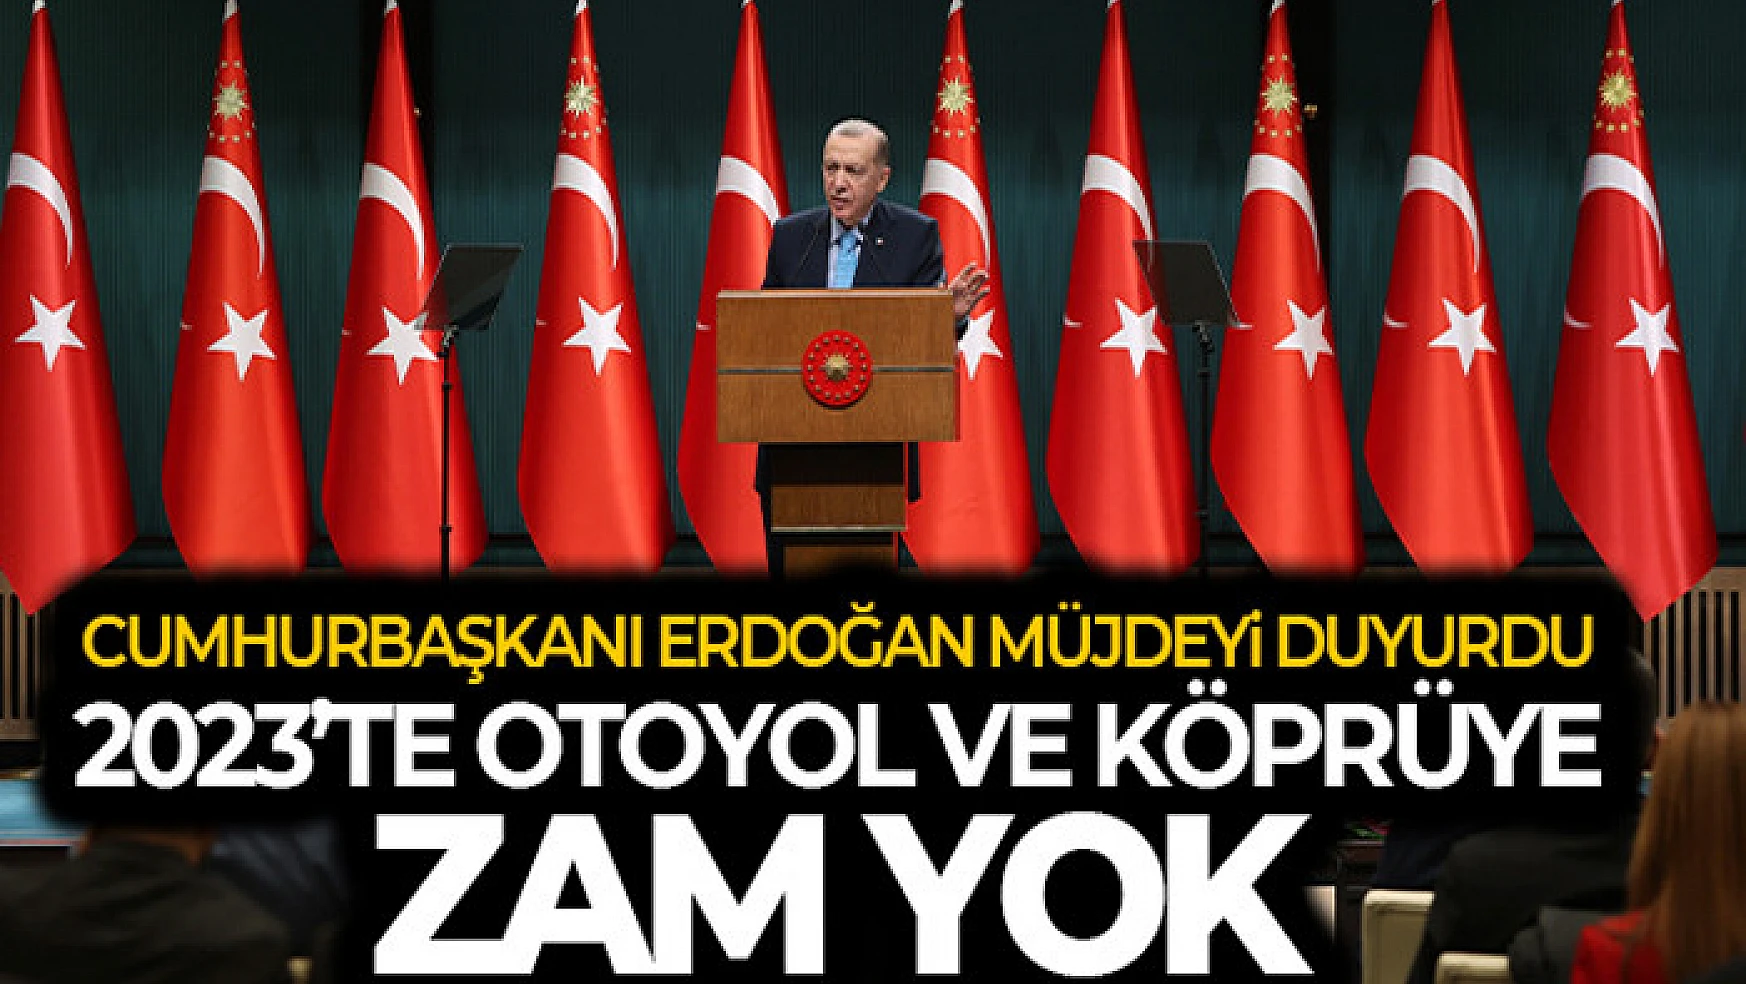 Cumhurbaşkanı Erdoğan'dan yeni müjde! Otoyol ve köprülere bu yıl zam yok